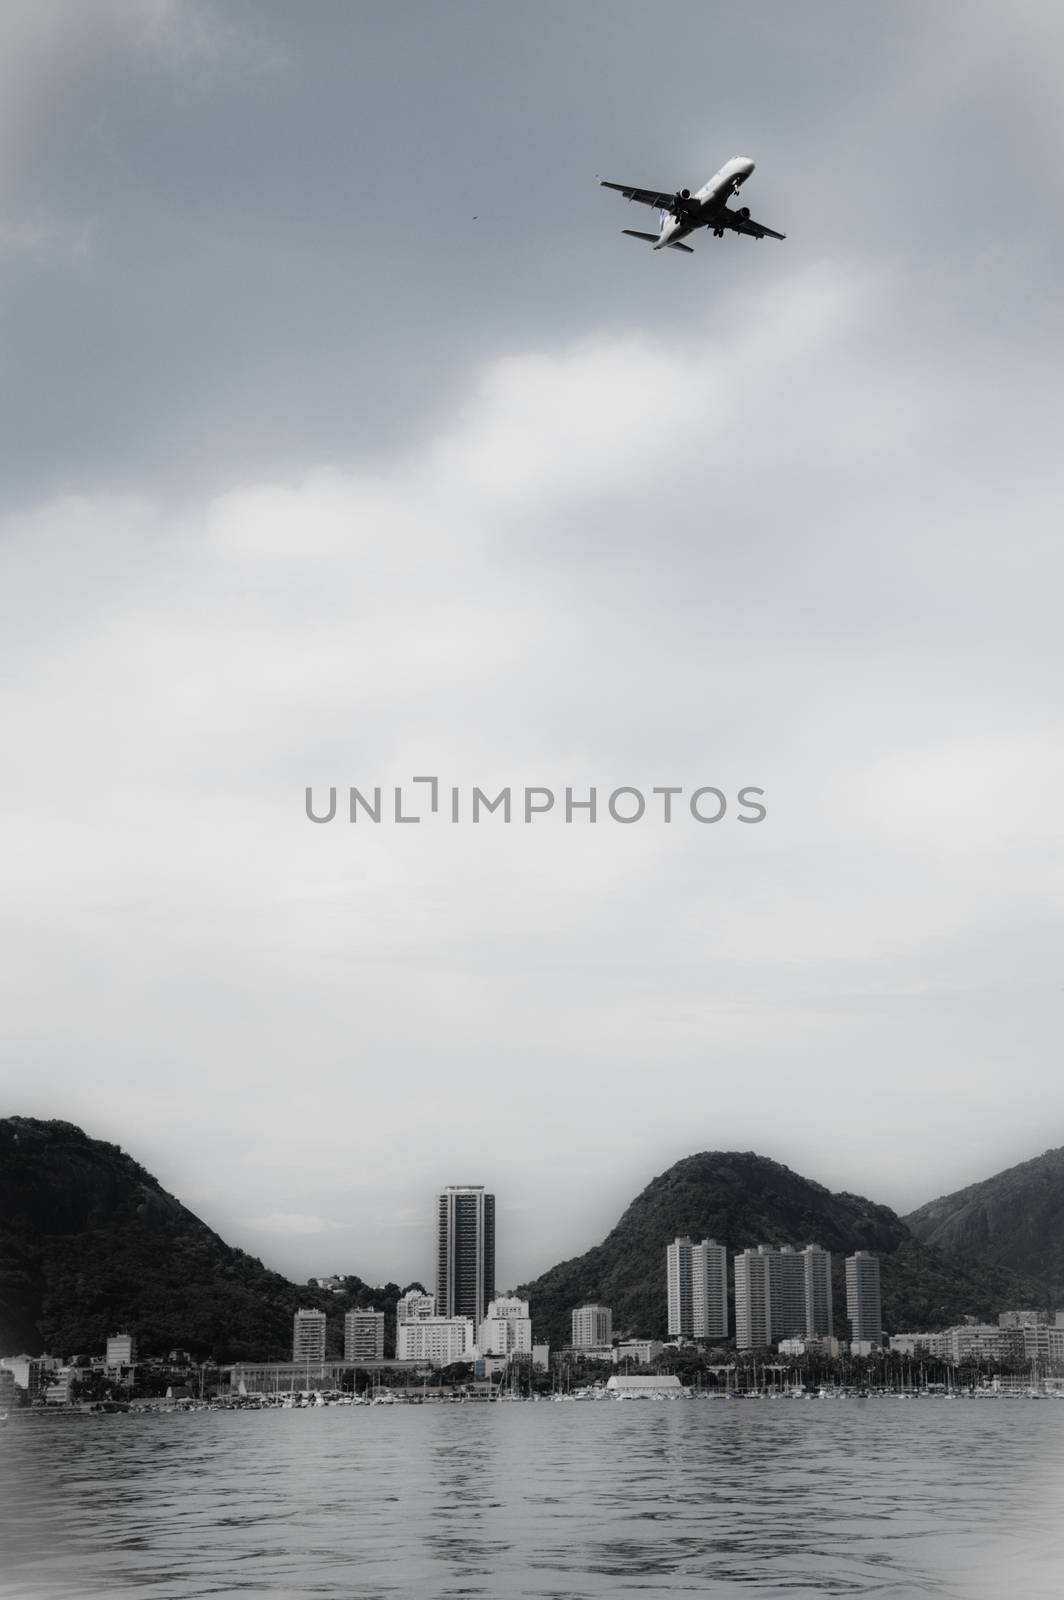 Airplane over Rio de Janeiro by CelsoDiniz